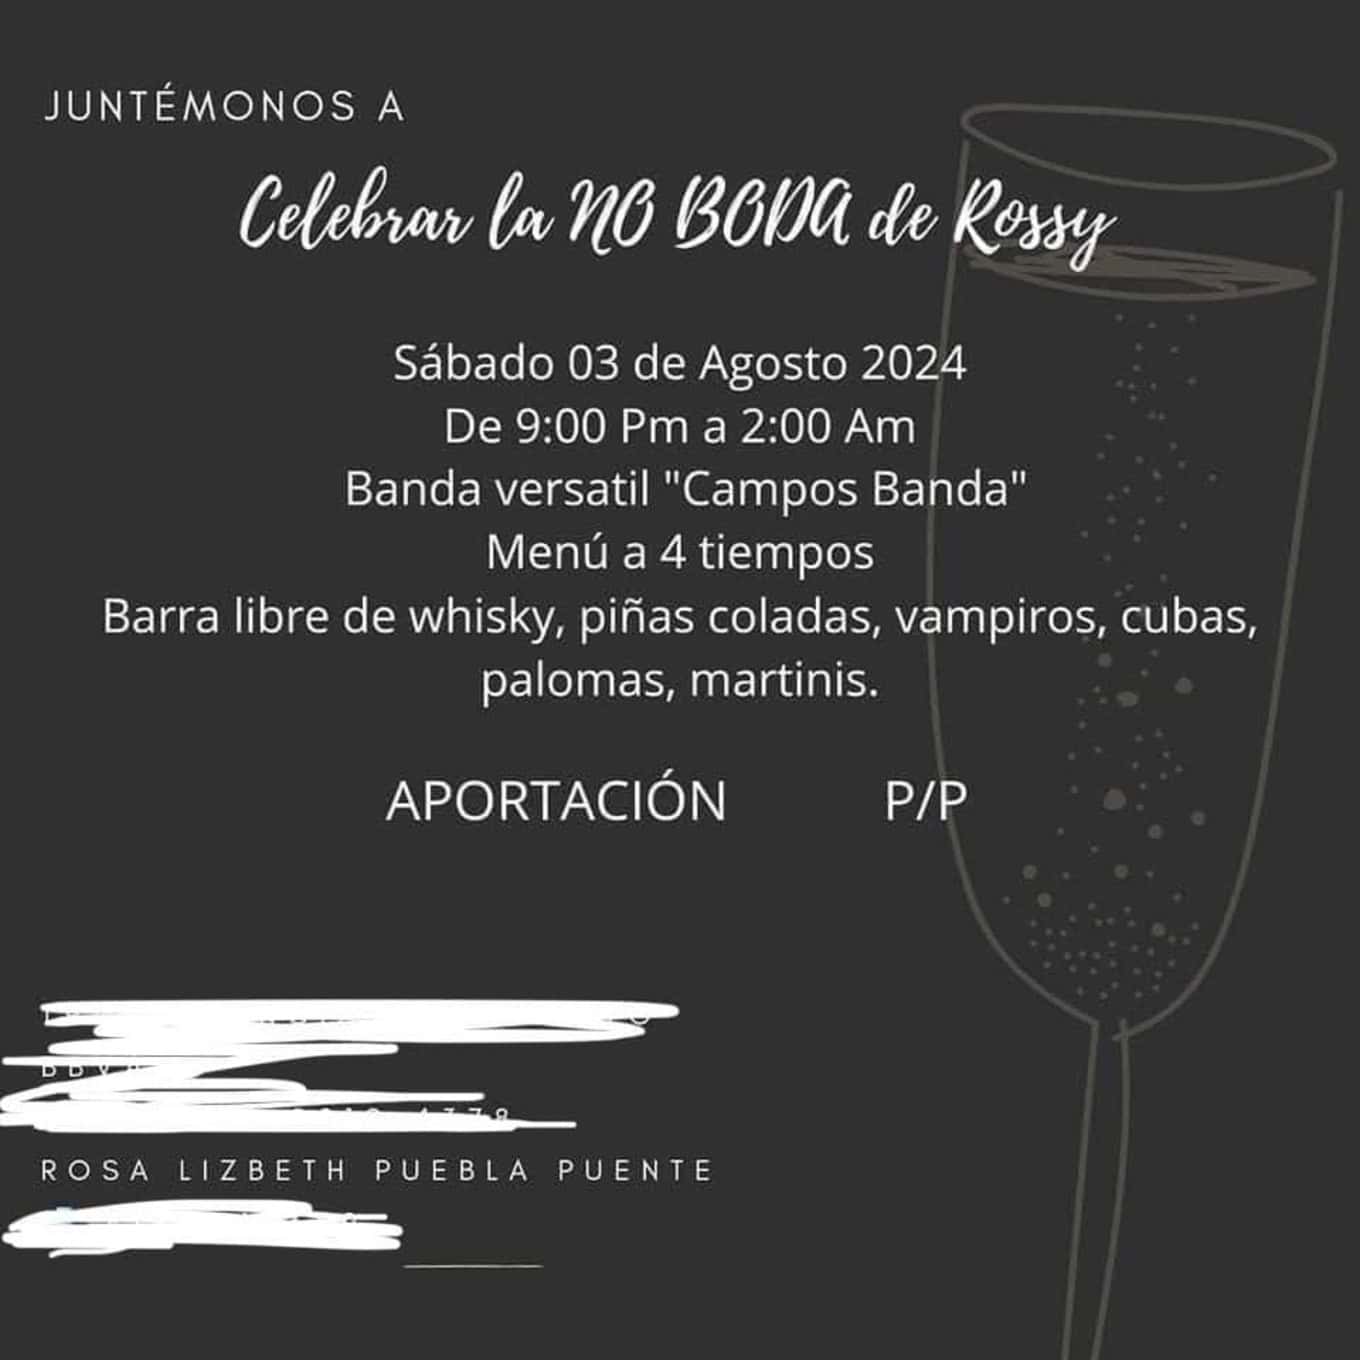 Invitación a la no boda de Rossy Puente en Monterrey.